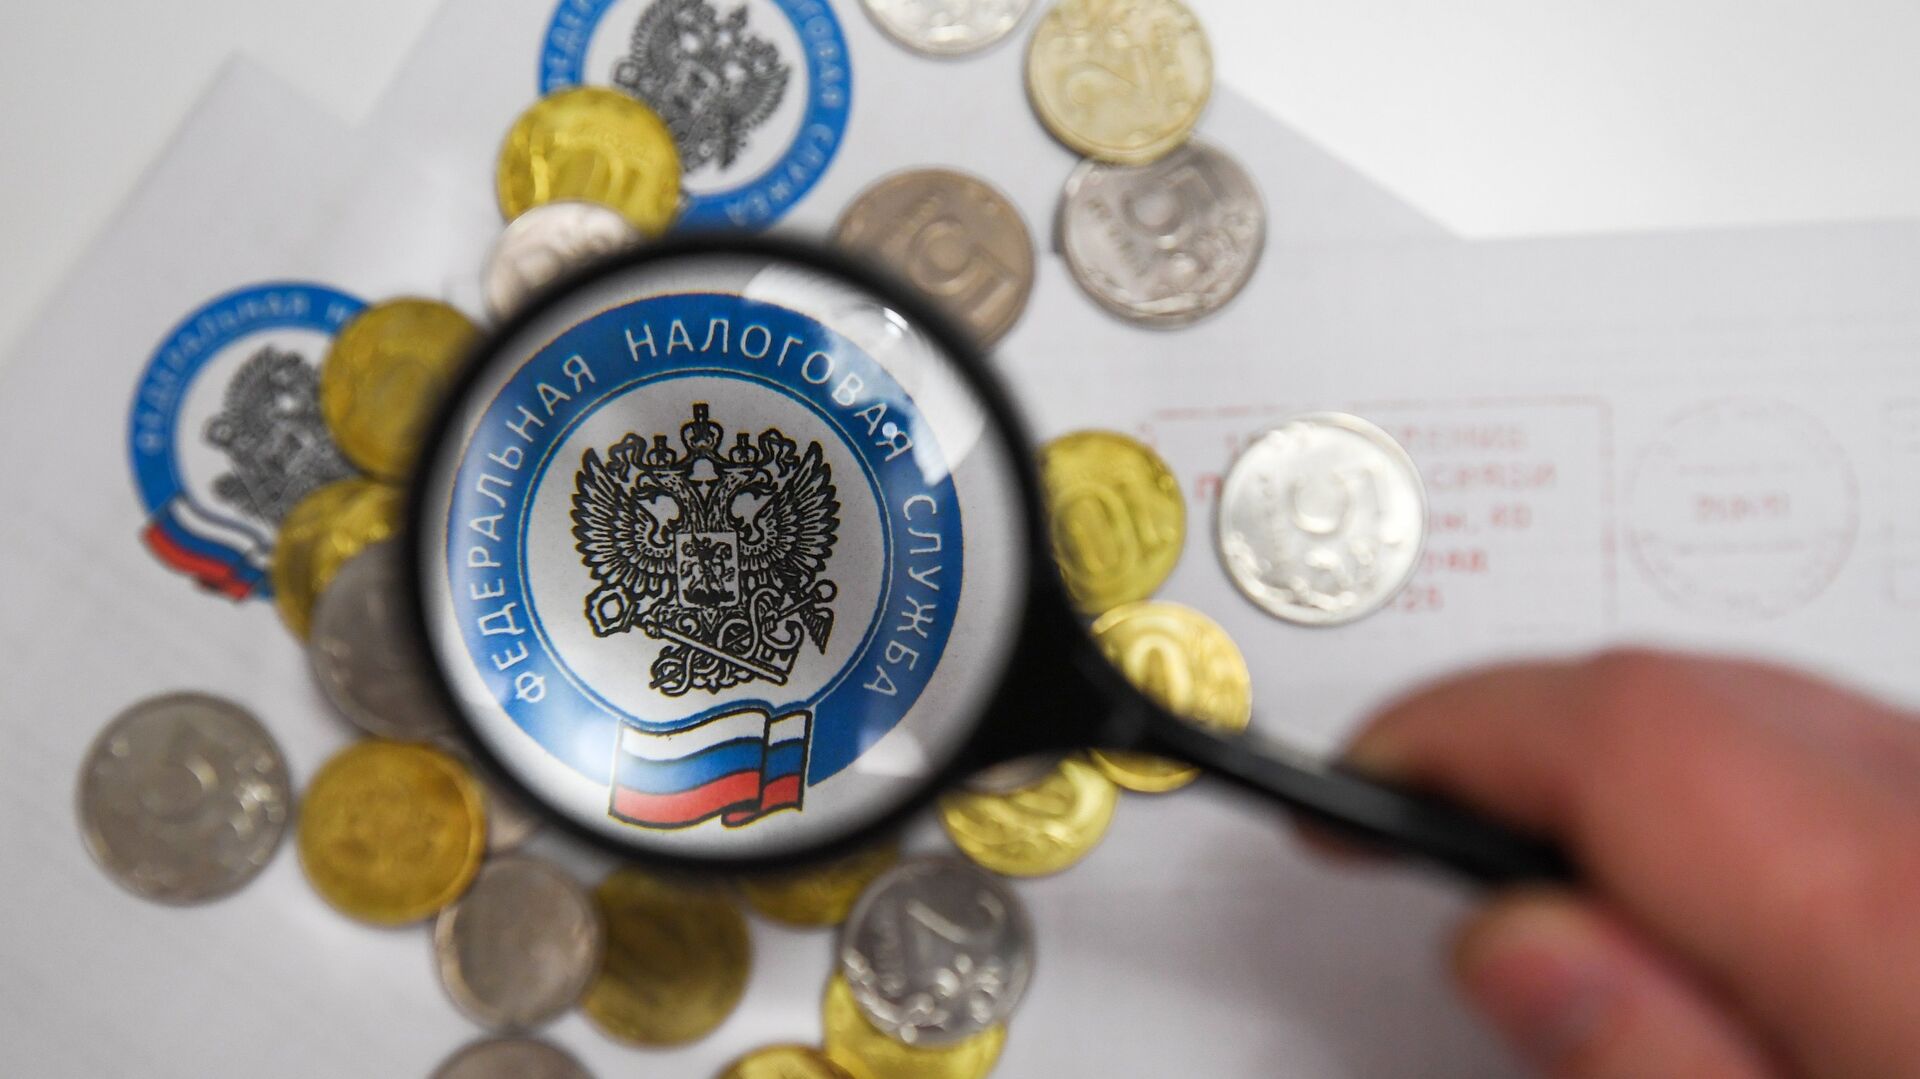 Монеты и конверты с логотипом ФНС РФ - РИА Новости, 1920, 10.08.2021